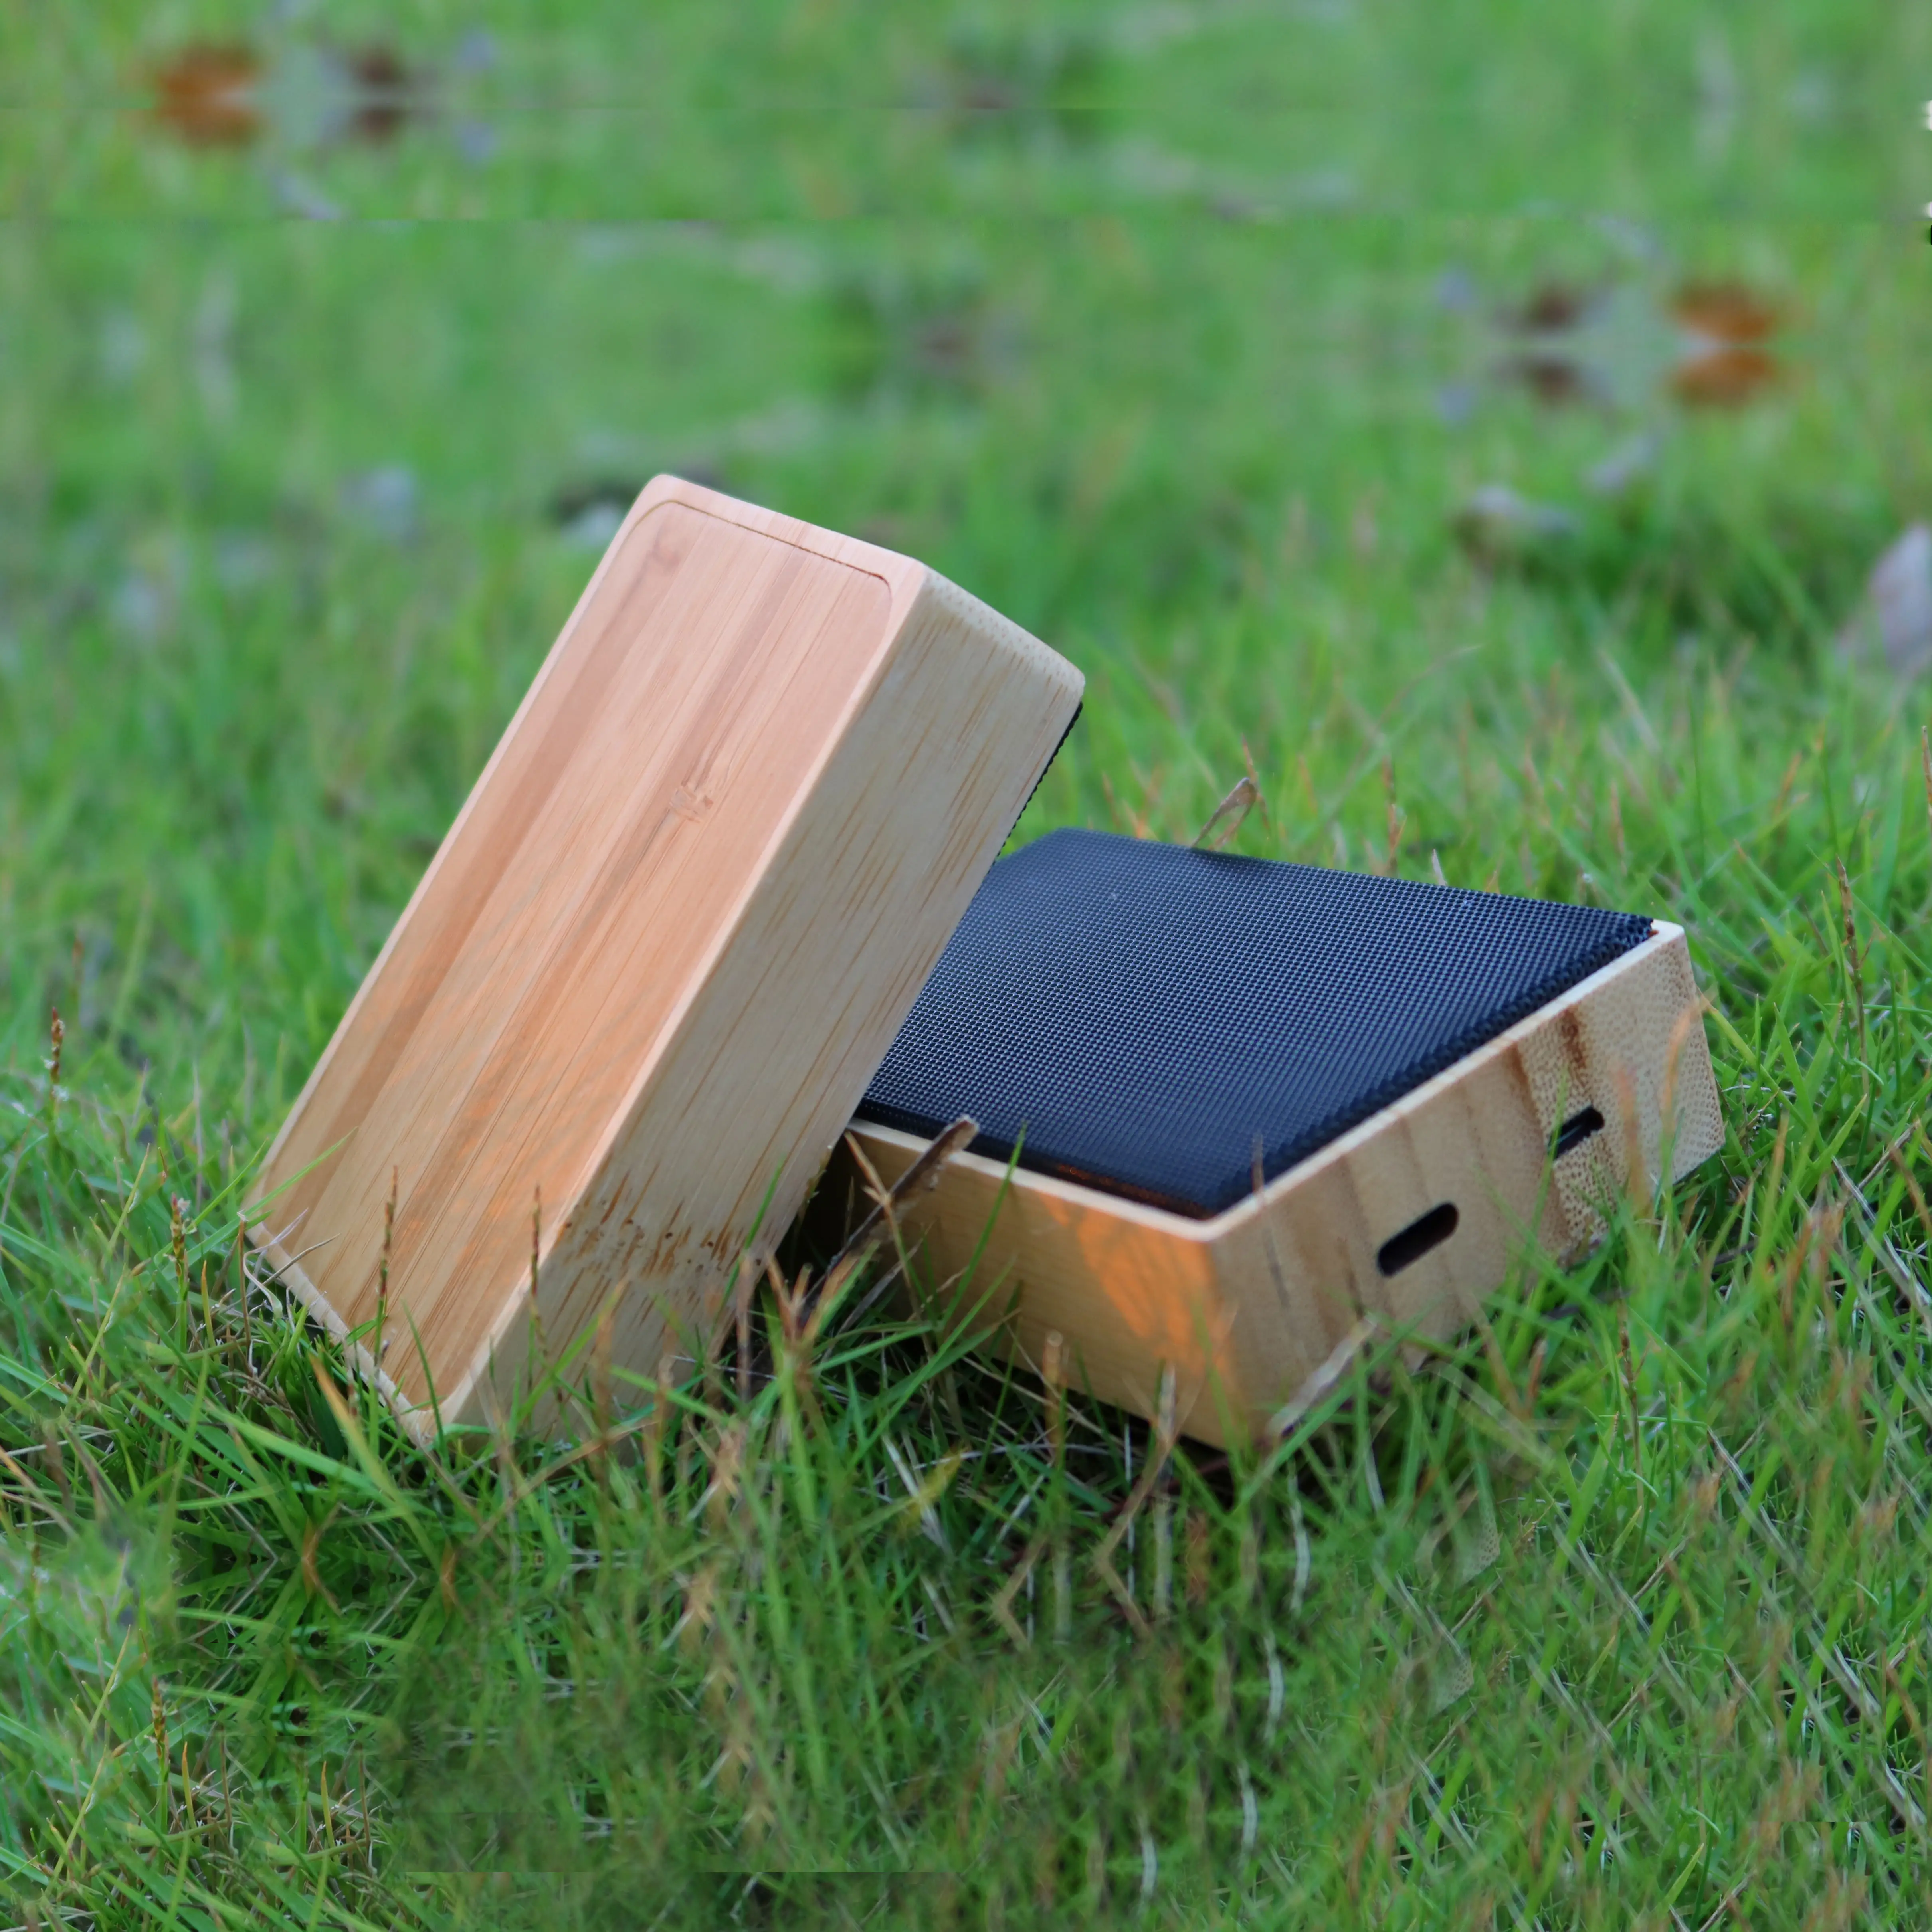 Nuovo arrivo portatile mini subwoofer wireless dente blu alimentatore a energia solare altoparlante TWS altoparlante in legno di legno di bambù solare